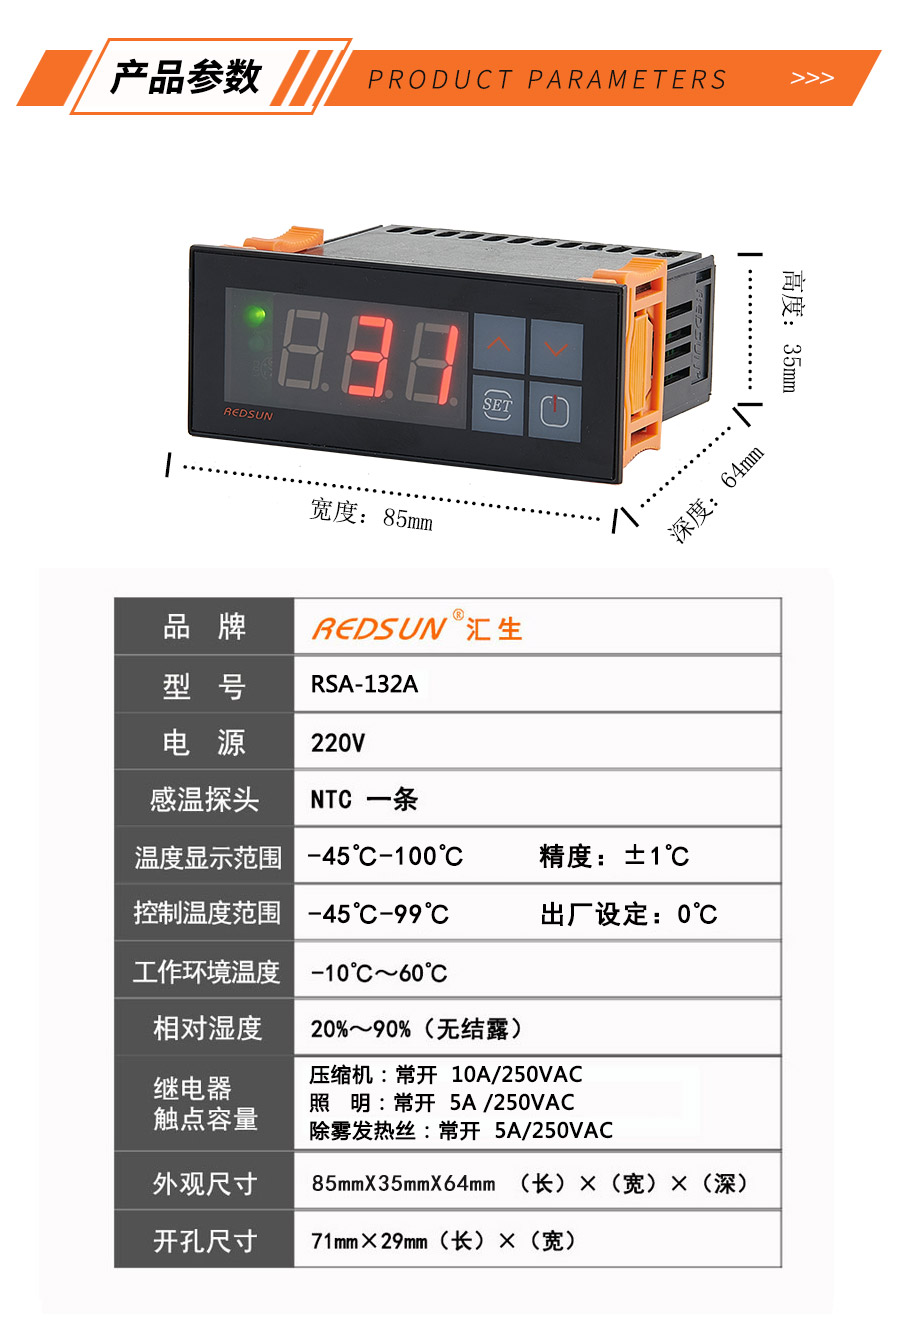 制冷化霜 中低温冷库控制器 RSA-132A 温度控制器-温控器-制冷制热恒温控制器-电子温控器 温控仪表-汇生